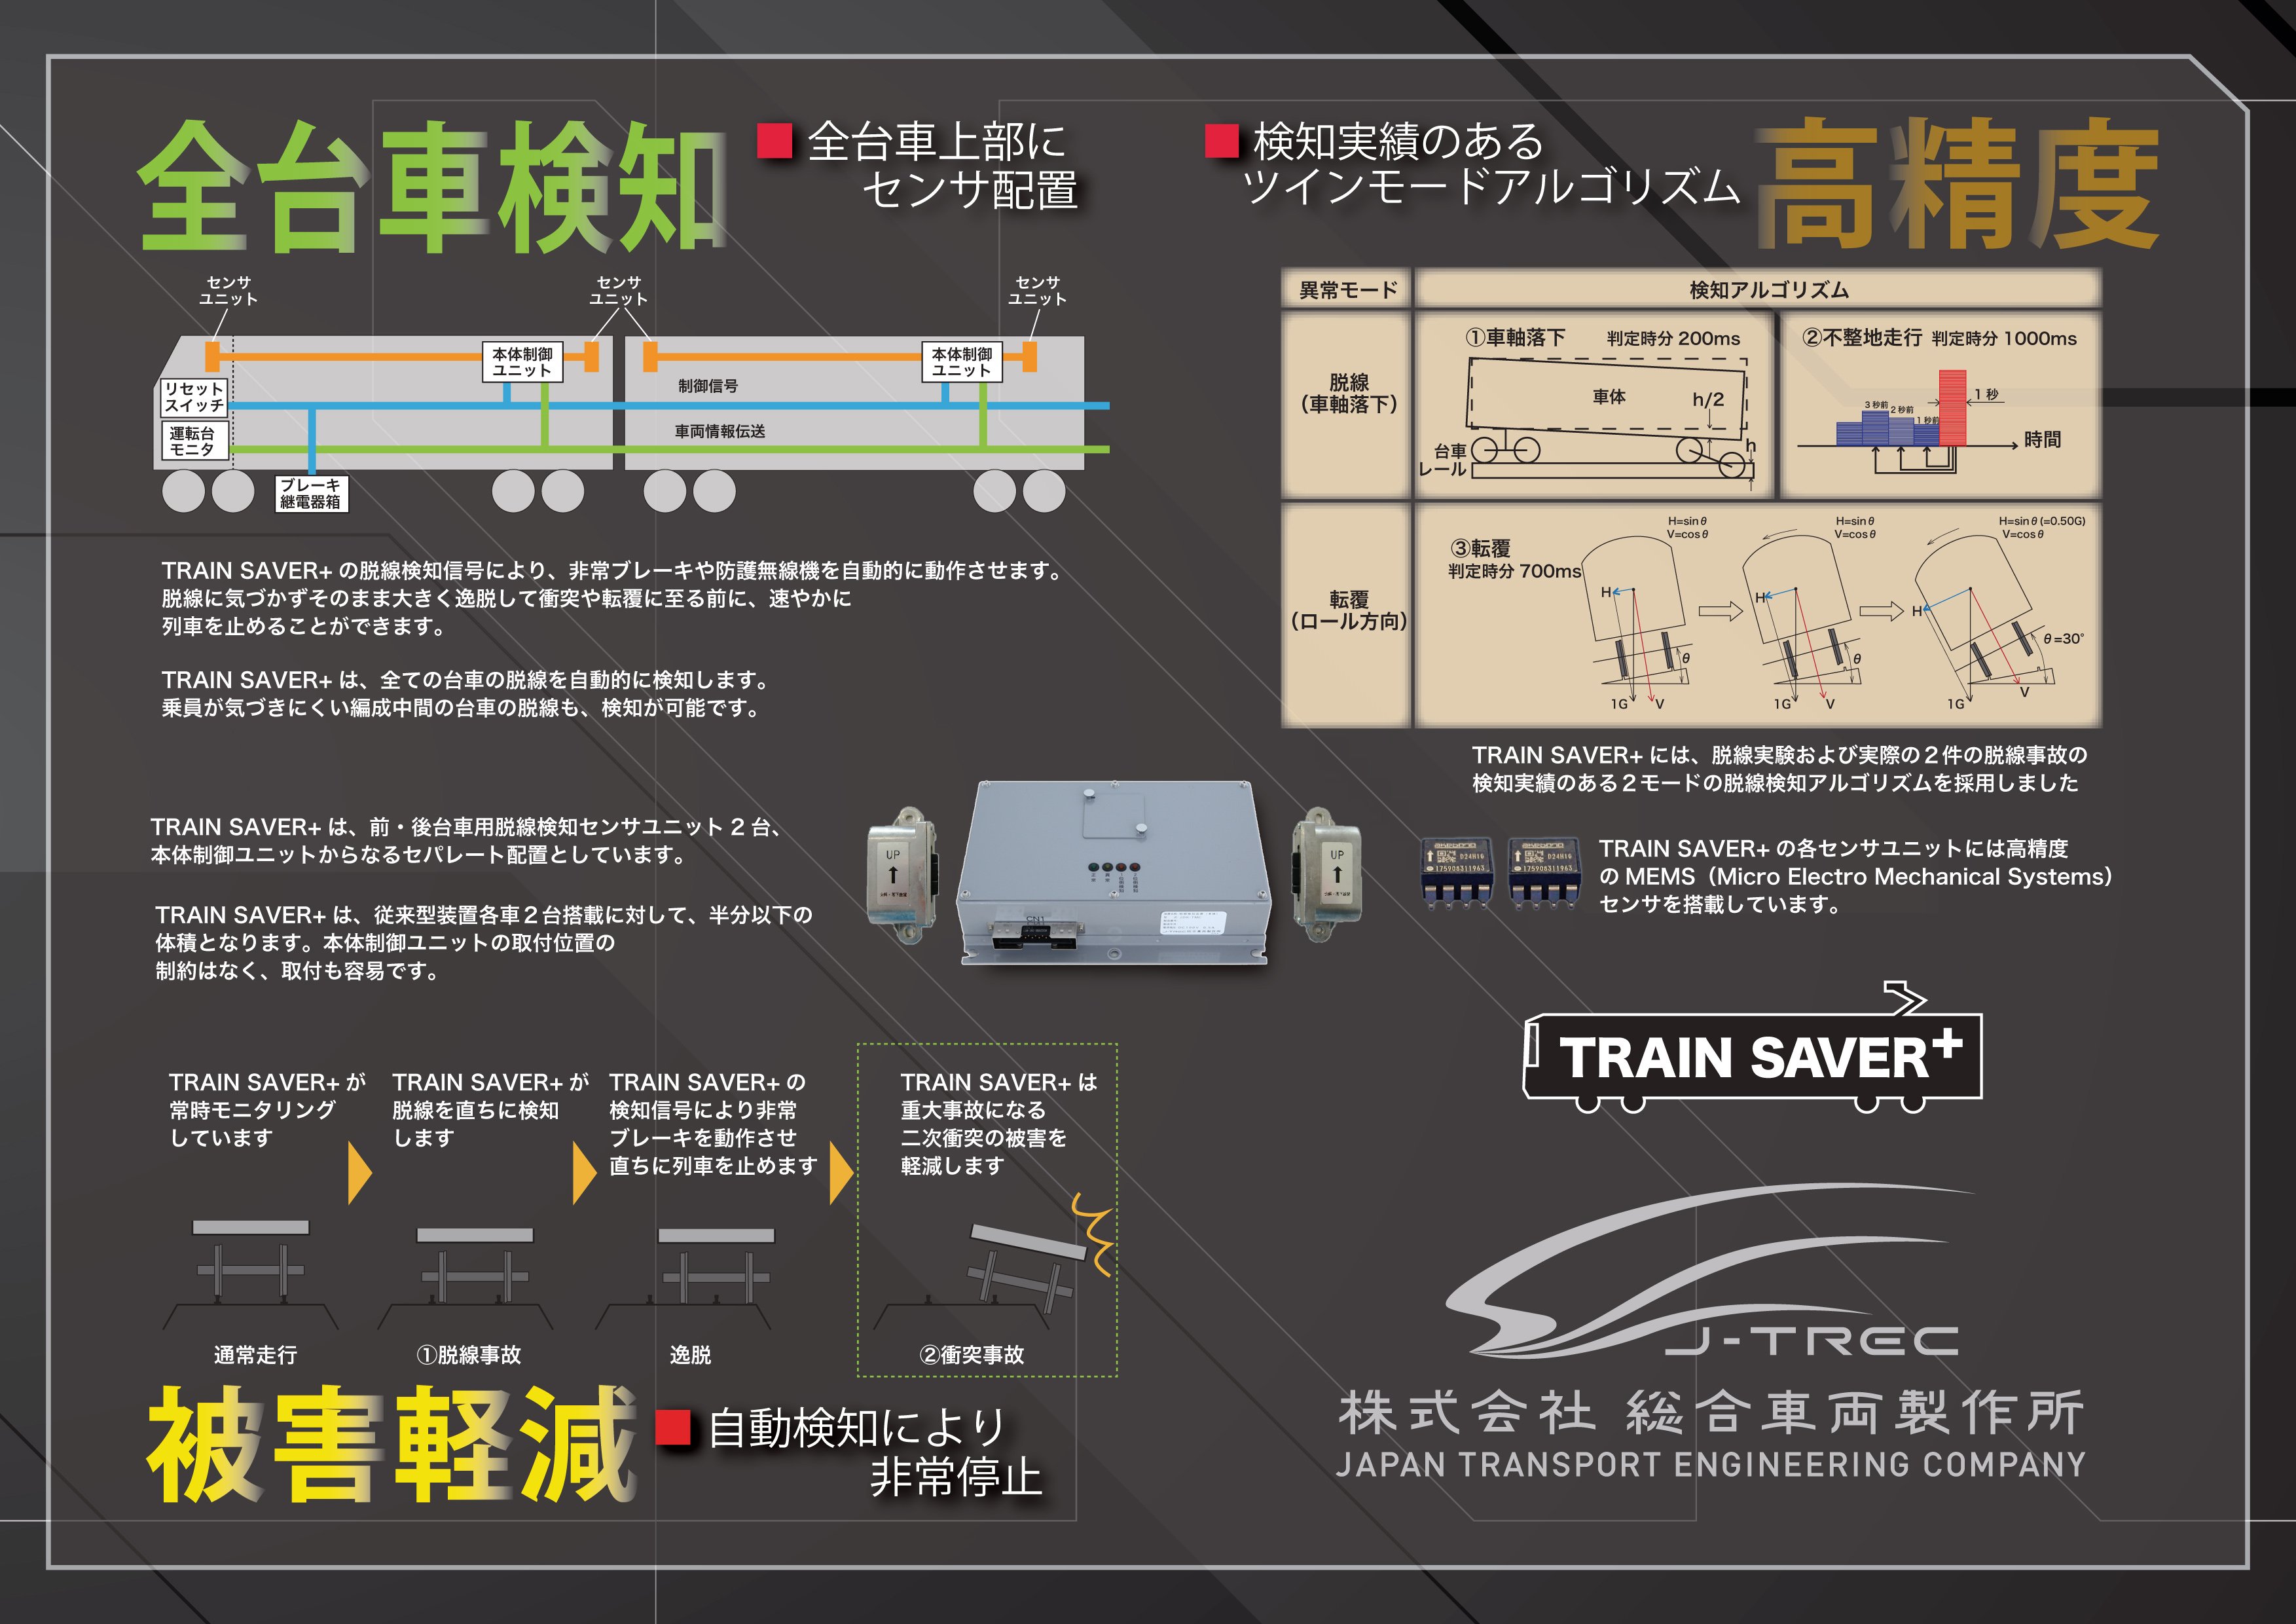 ツインセンサ型脱線検知装置 TRAIN SAVER+